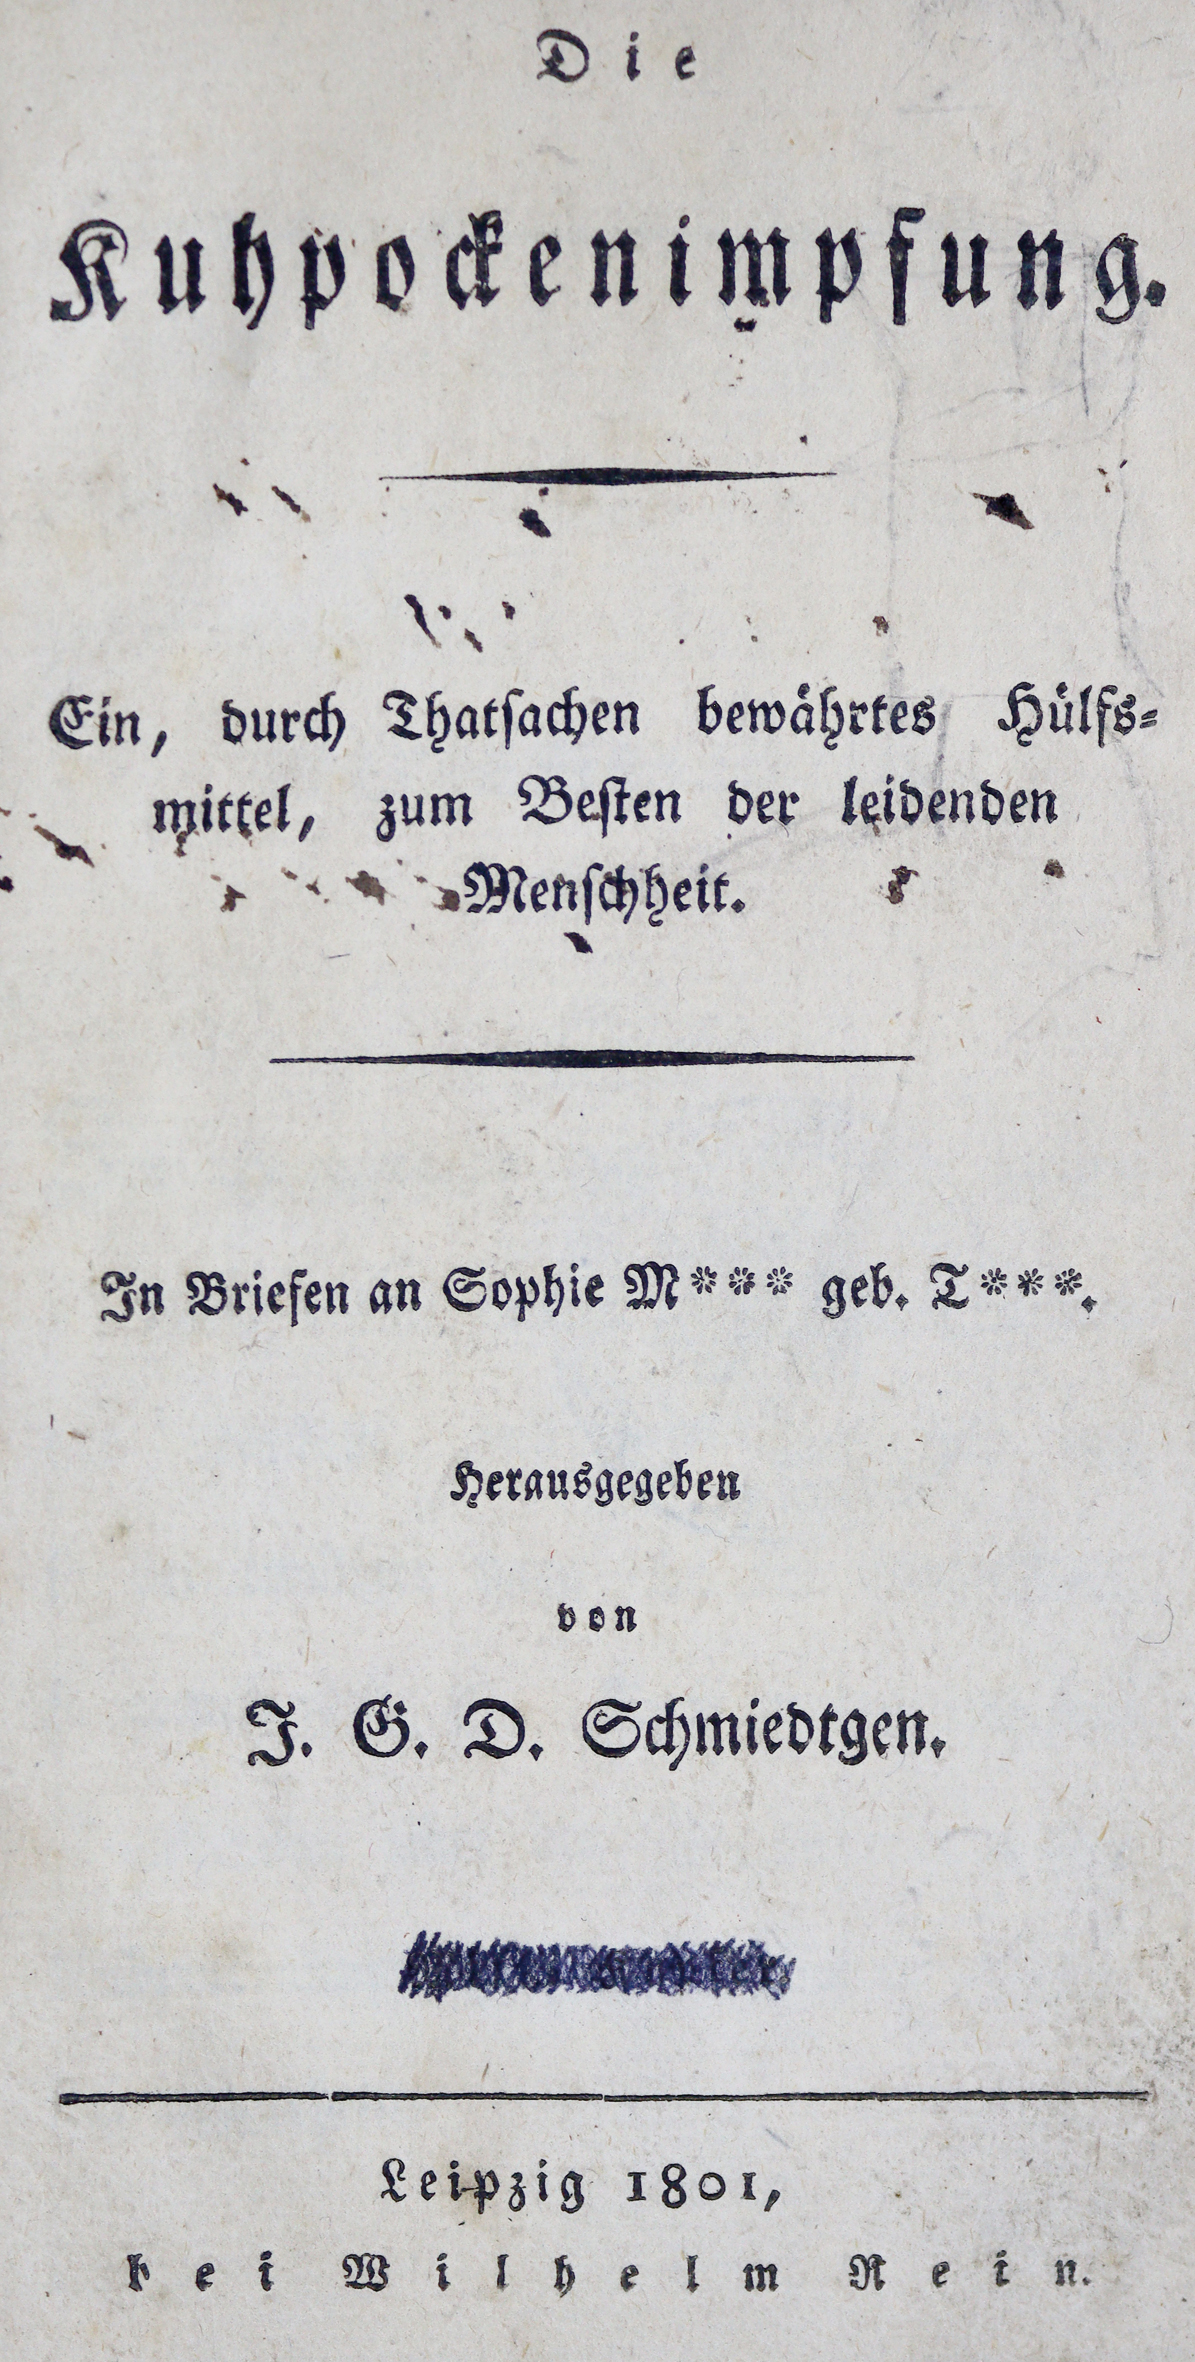 Schmiedtgen,J.G.D. | Bild Nr.1